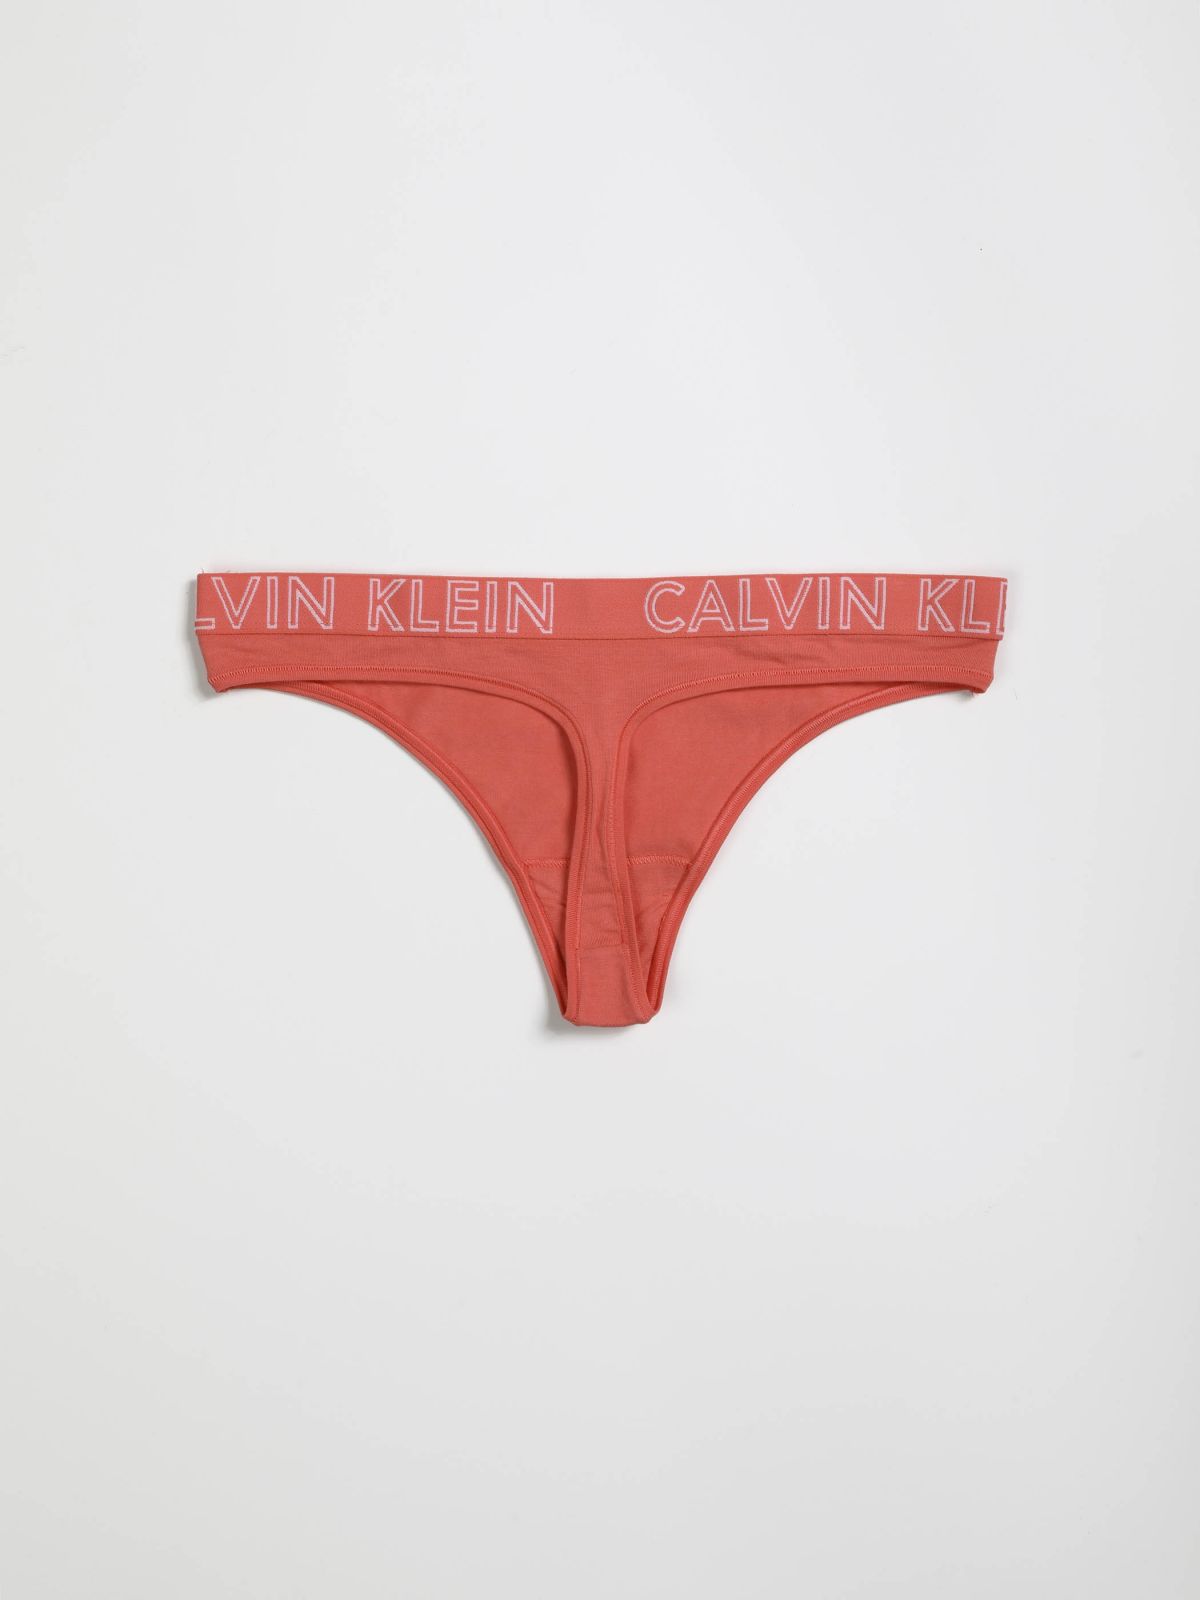  תחתוני חוטיני עם גומי לוגו של CALVIN KLEIN